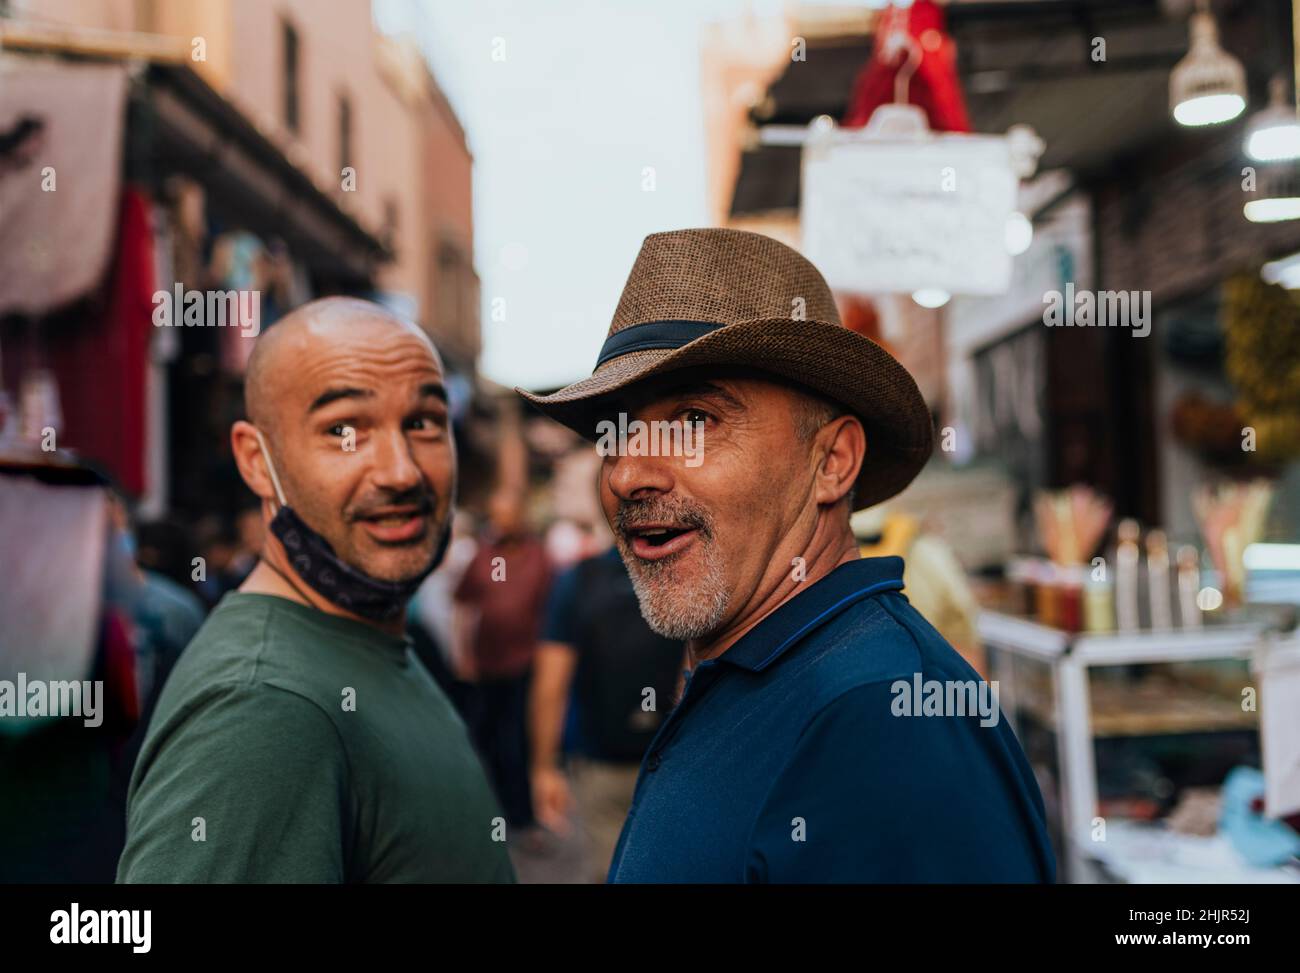 Portrait de deux amis pris dans un marché à Marrakech, Maroc. Banque D'Images